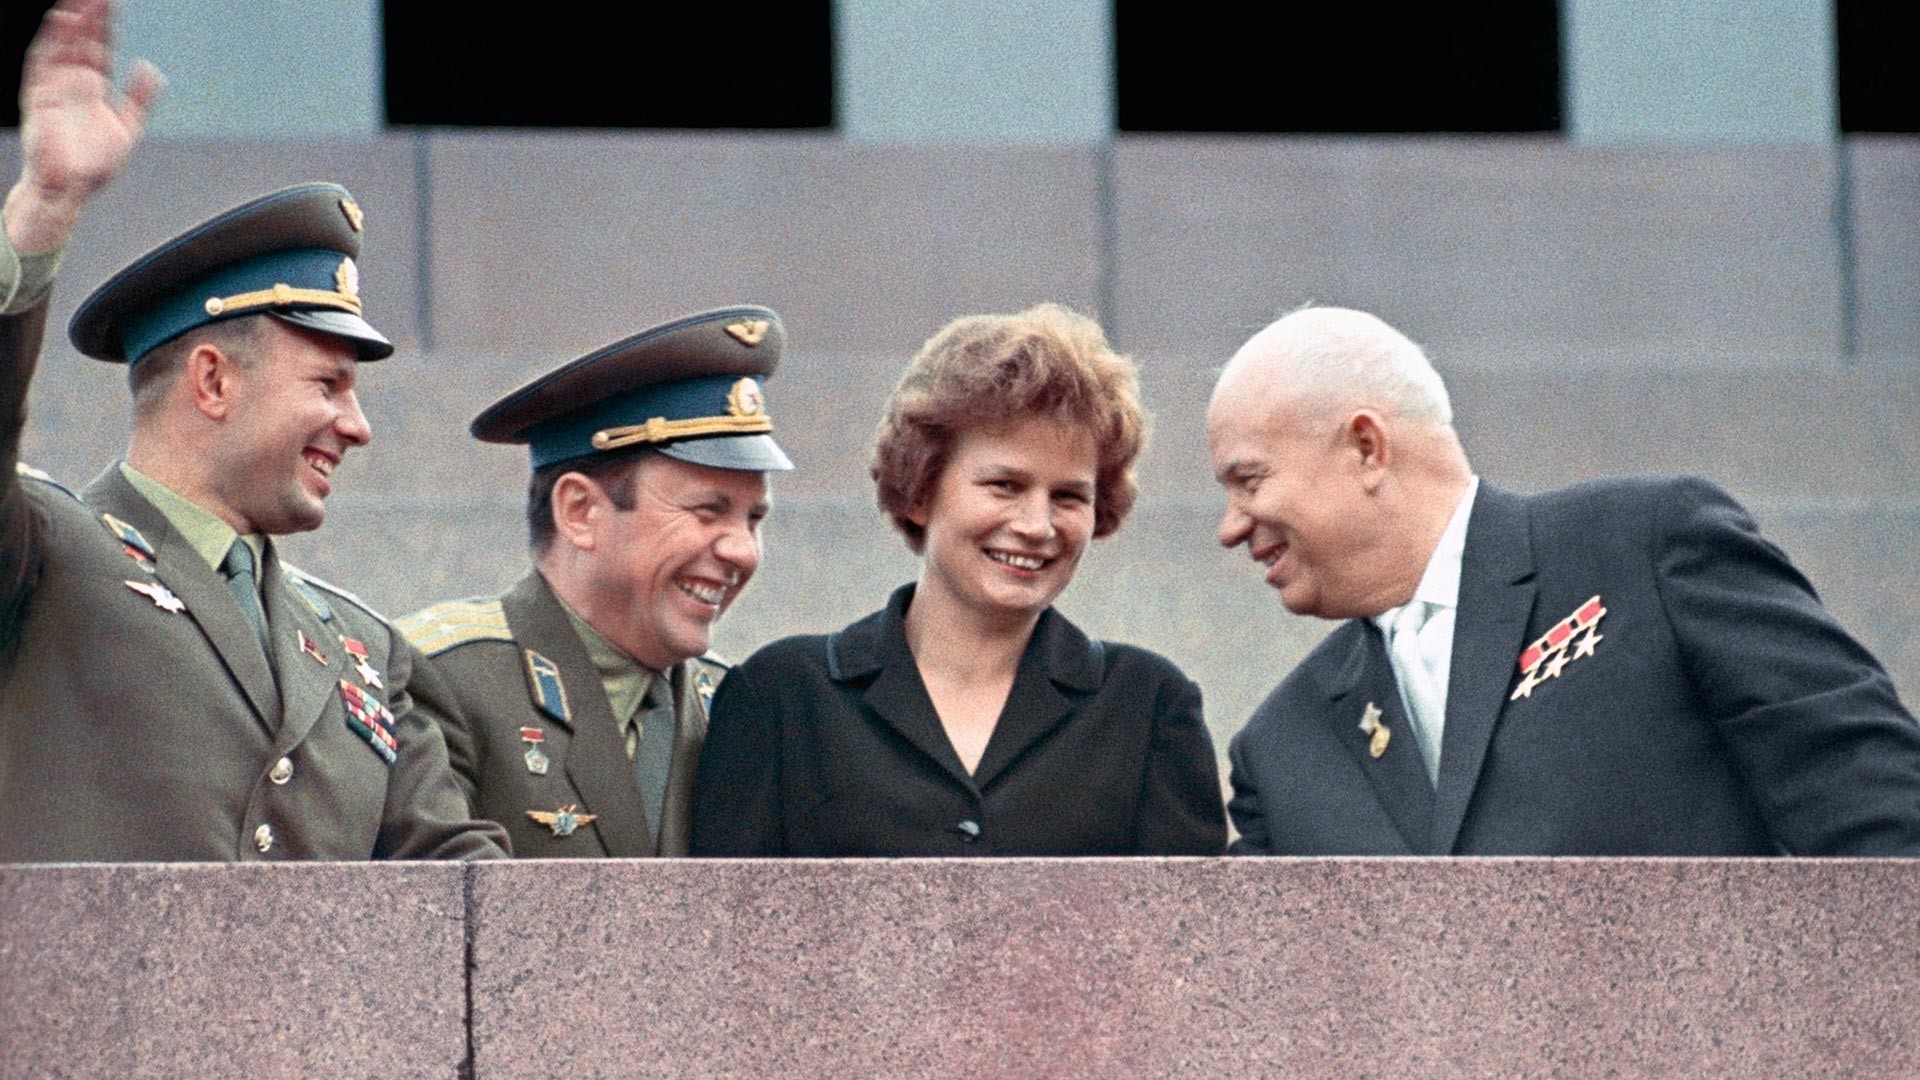 Prvi sekretar CK KPSZ Nikita Hruščov in kozmonavti Valentina Tereškova, Pavel Popovič in Jurij Gagarin (z desne proti levi) na tribuni Leninovega mavzoleja.